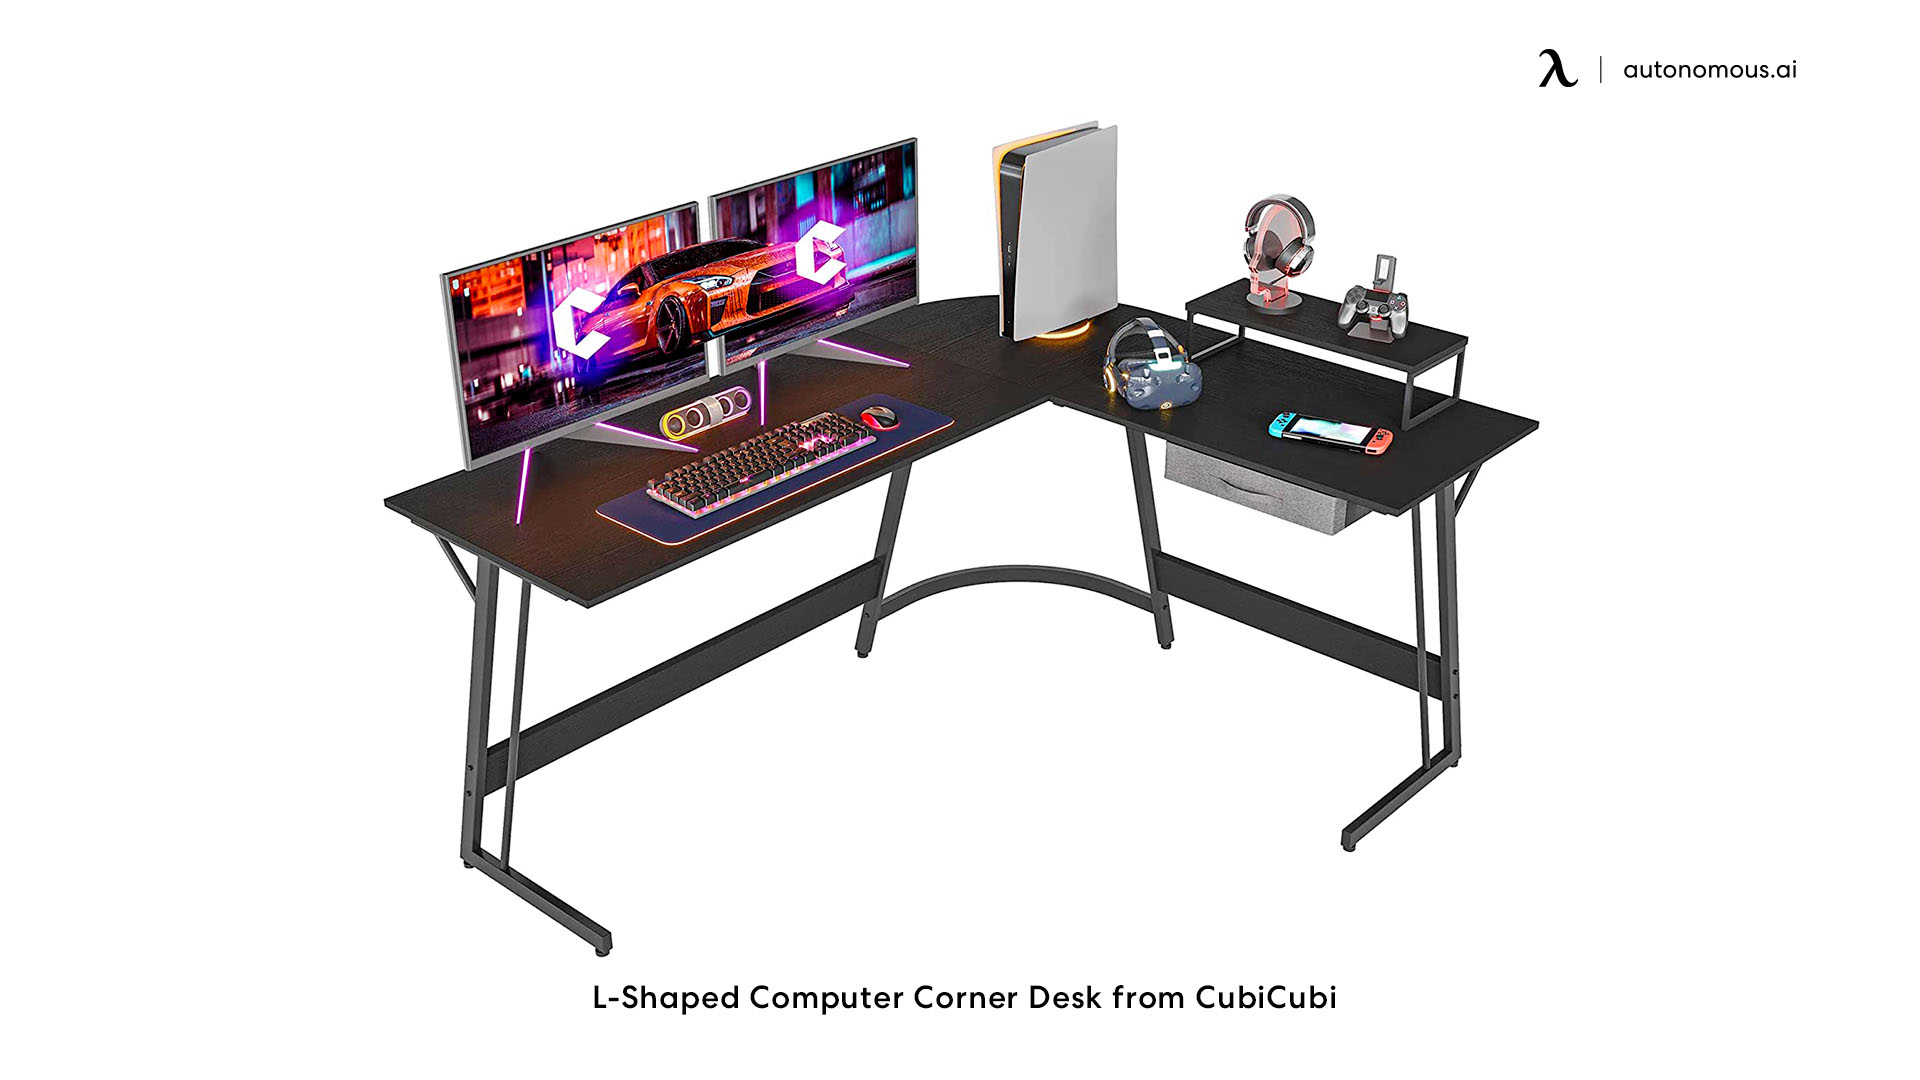 L-Shaped Computer Corner Desk from CubiCubi